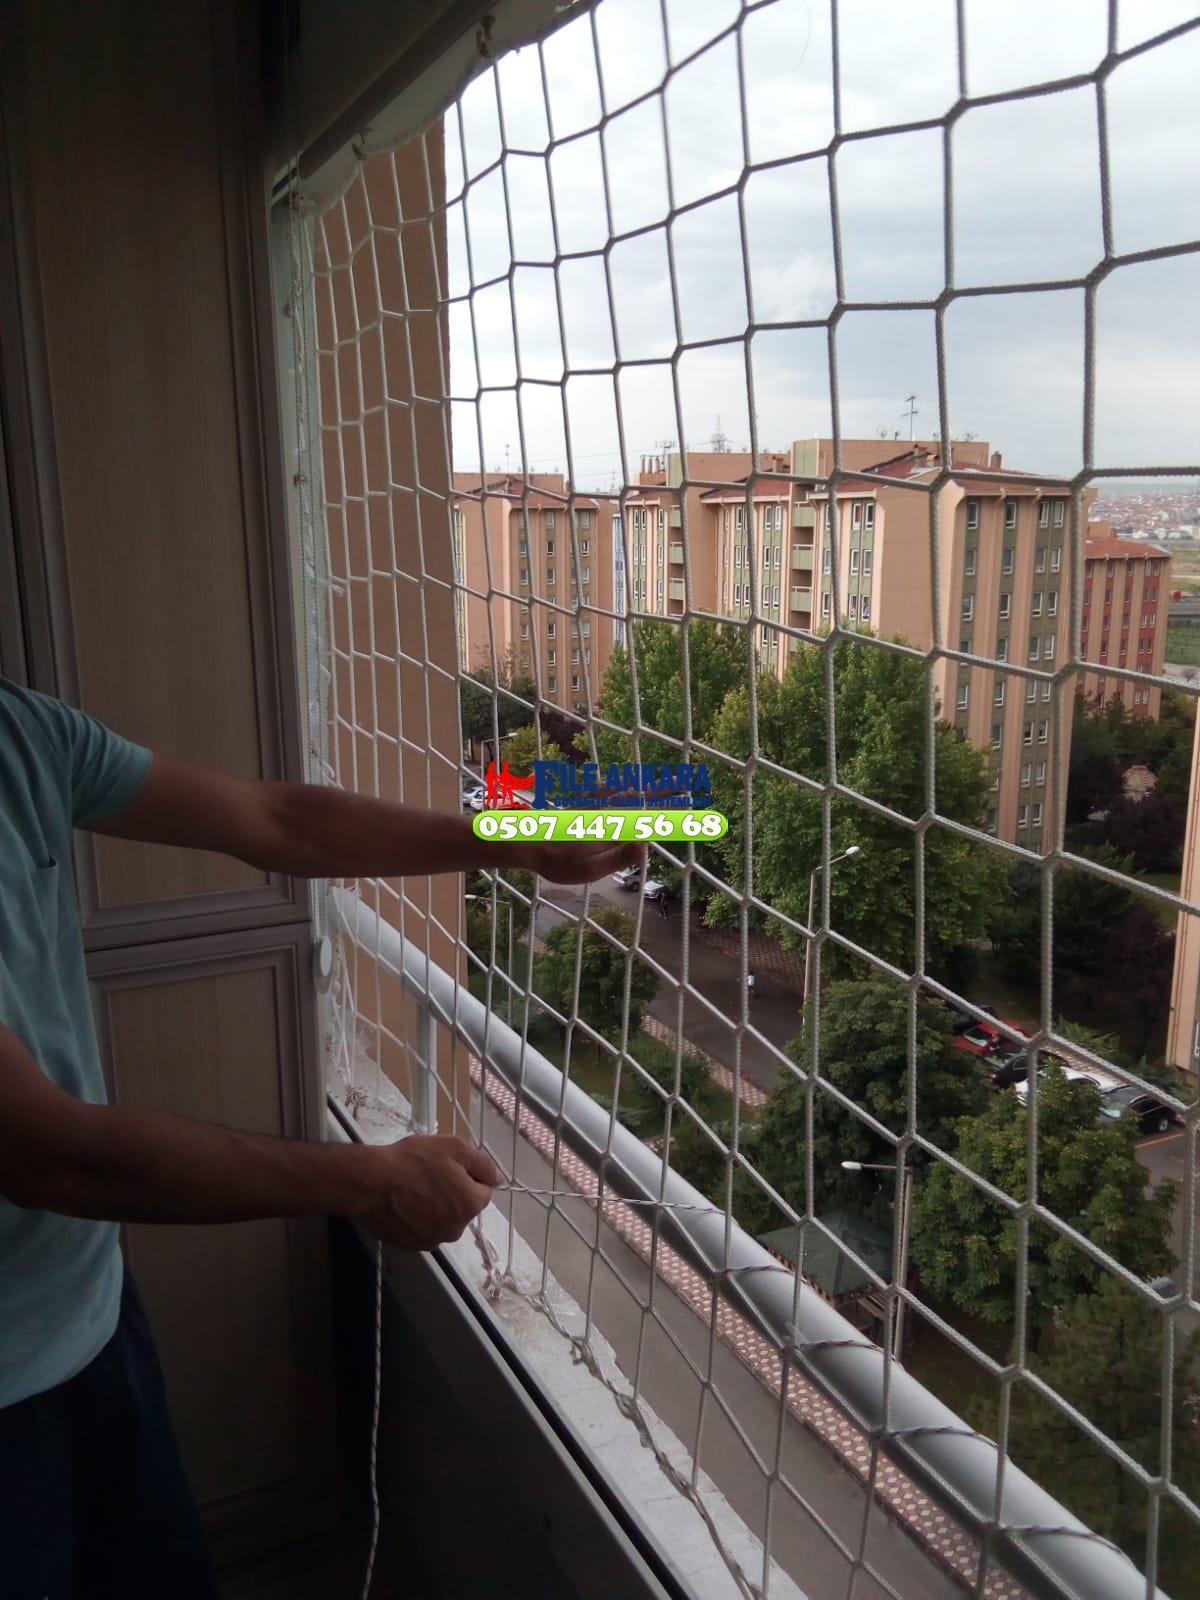 Ankara Alacaatli Balkon  koruma filesi - Merdiven filesi - En ucuz balkon güvenlik filesi satış ve montajı 0507 447 56 68